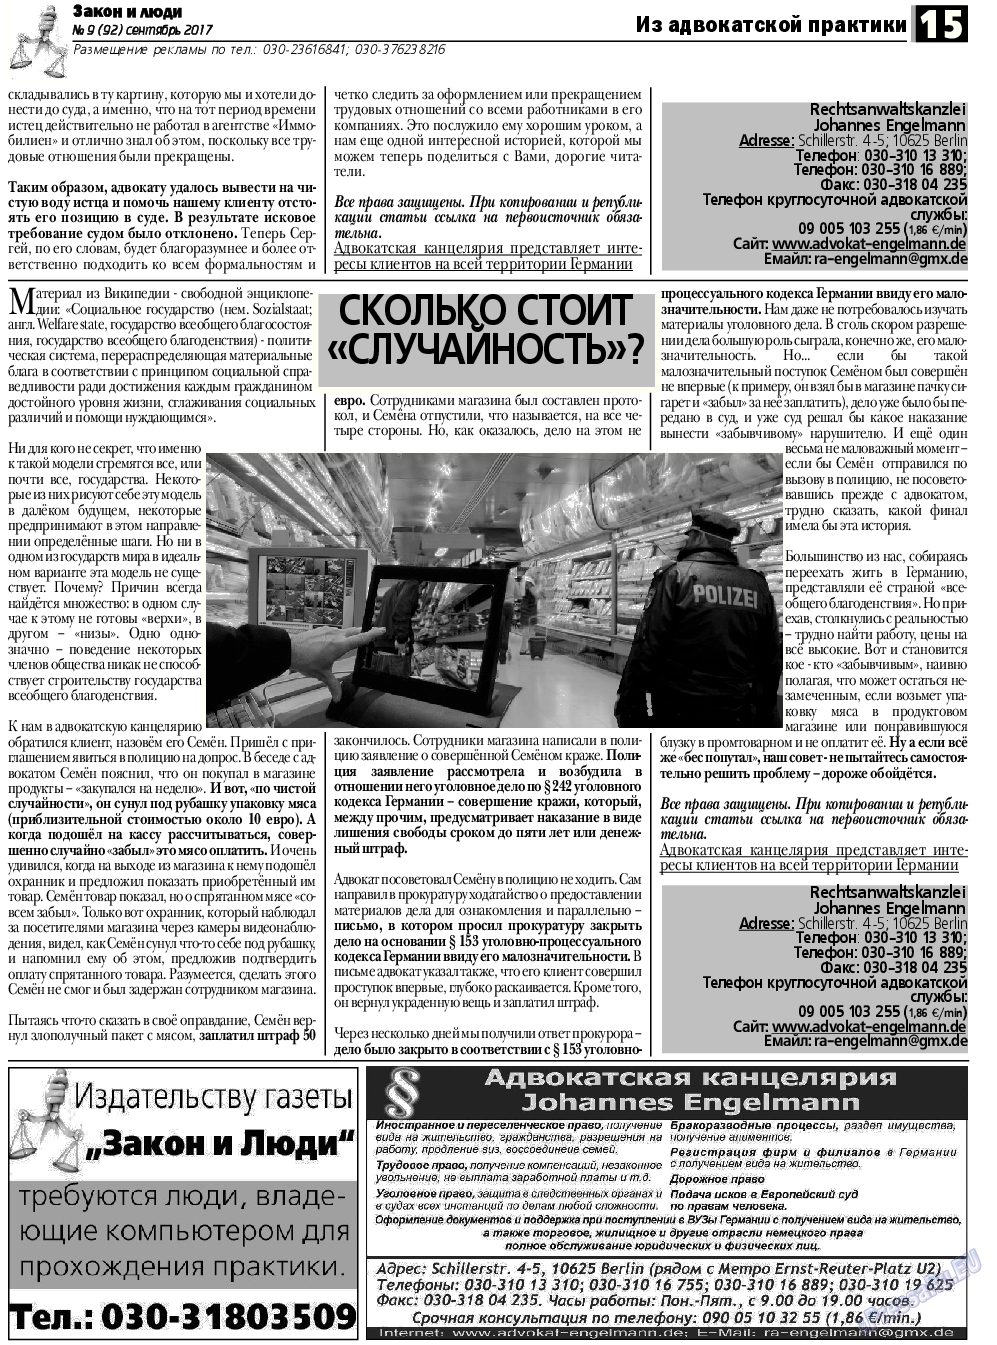 Закон и люди, газета. 2017 №9 стр.15